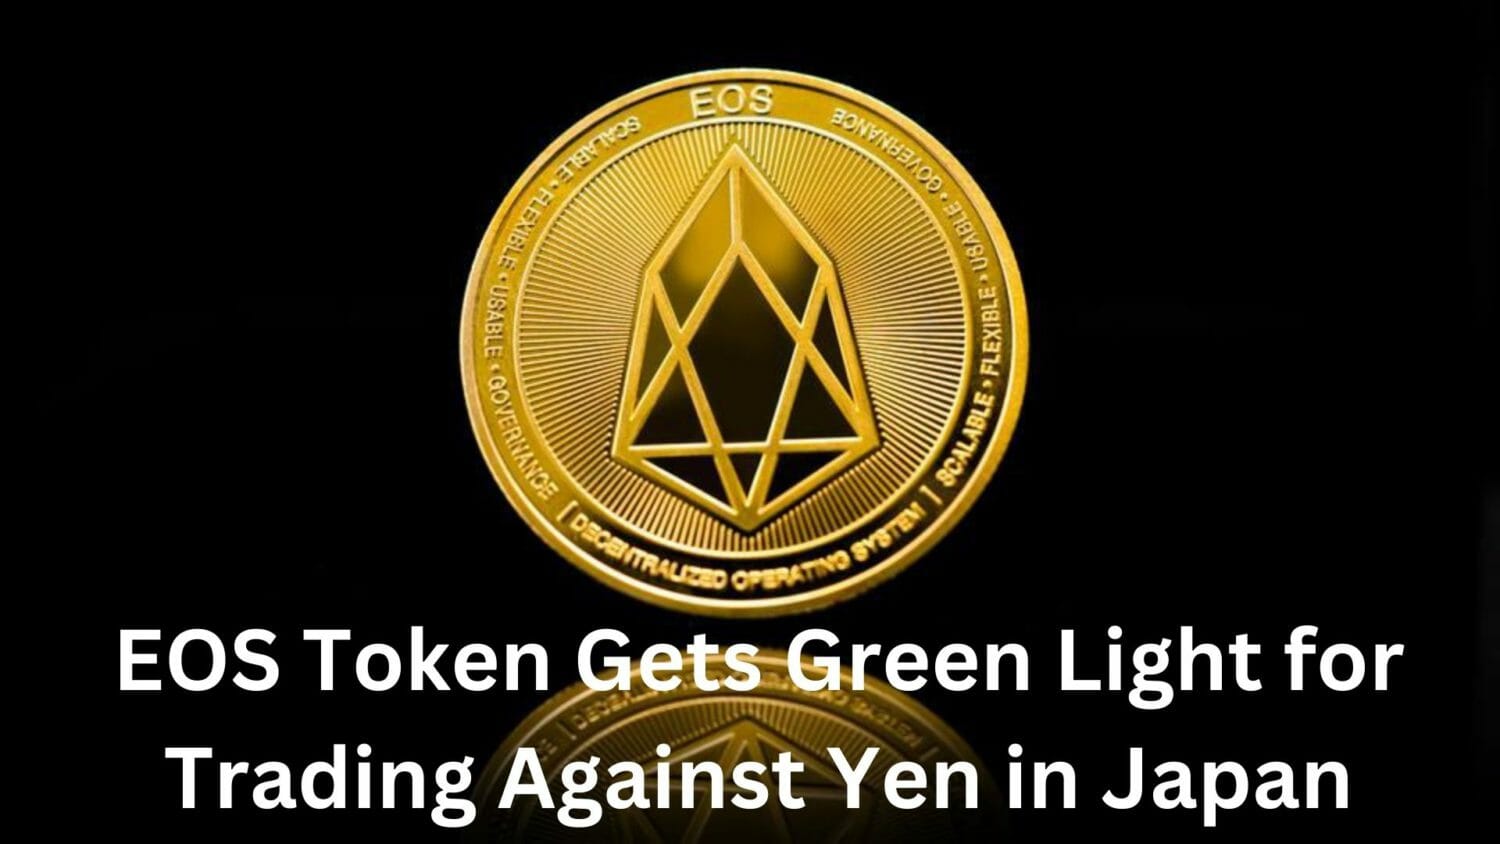 Eos Token Gets Green Light For Trading Against Yen Trading In Japan